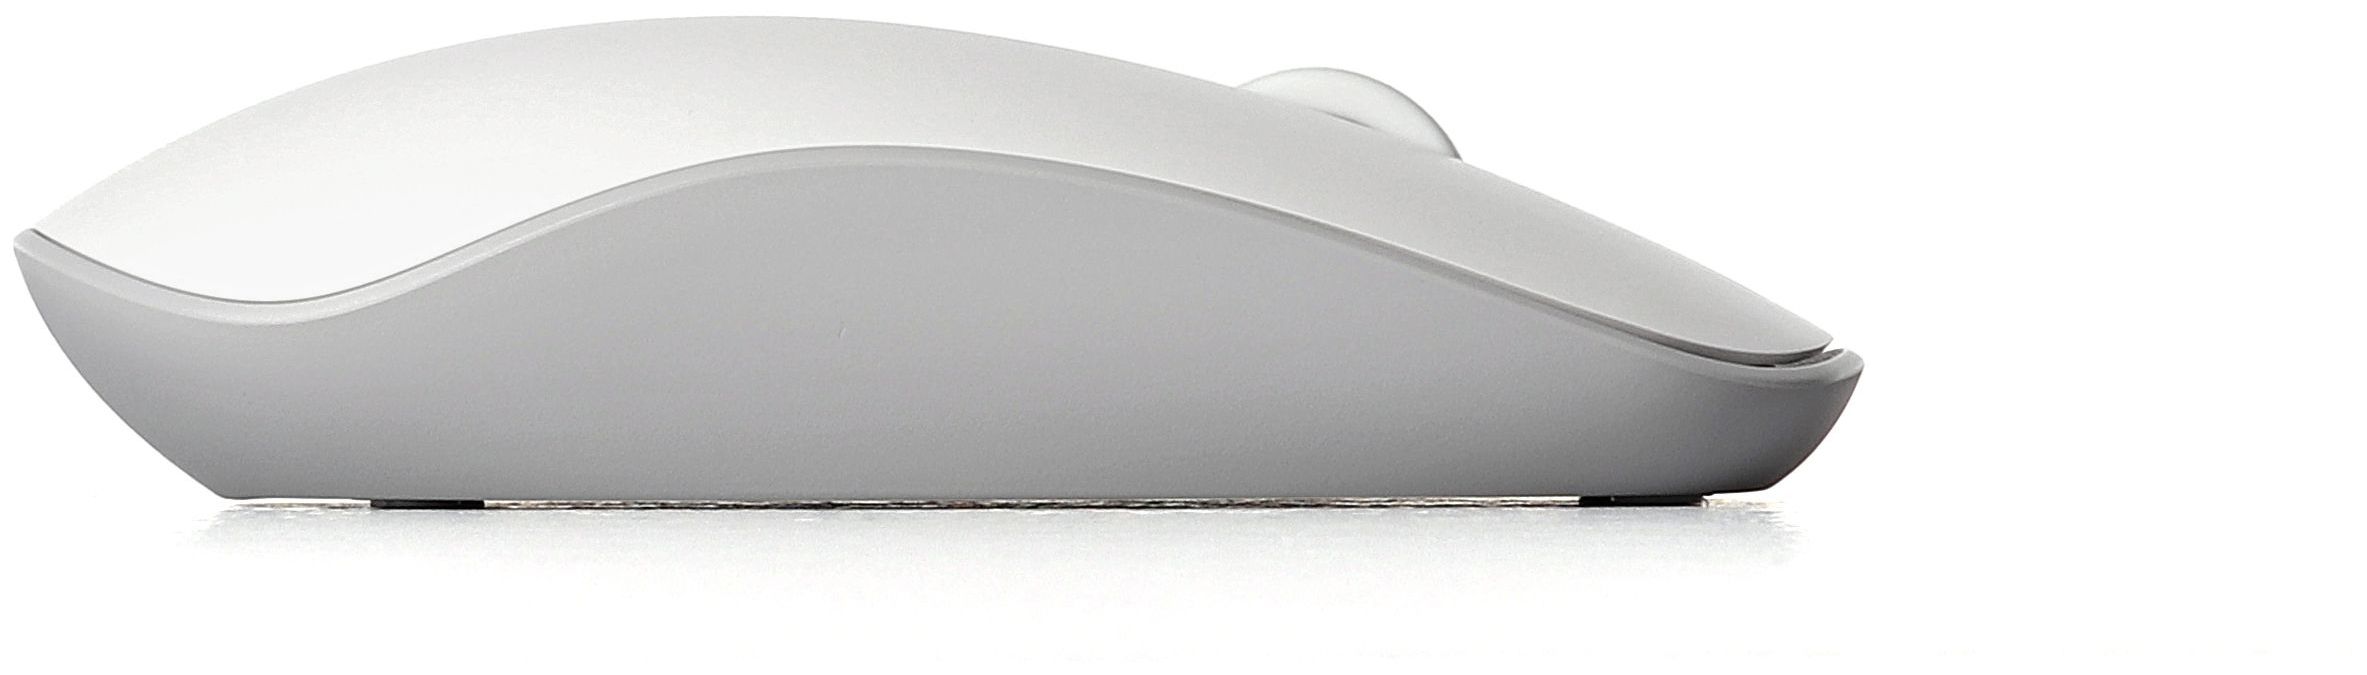 glänzend Rapoo M200 Silent expert Optisch DPI von Maus Büro Technomarkt 1300 (Weiß)